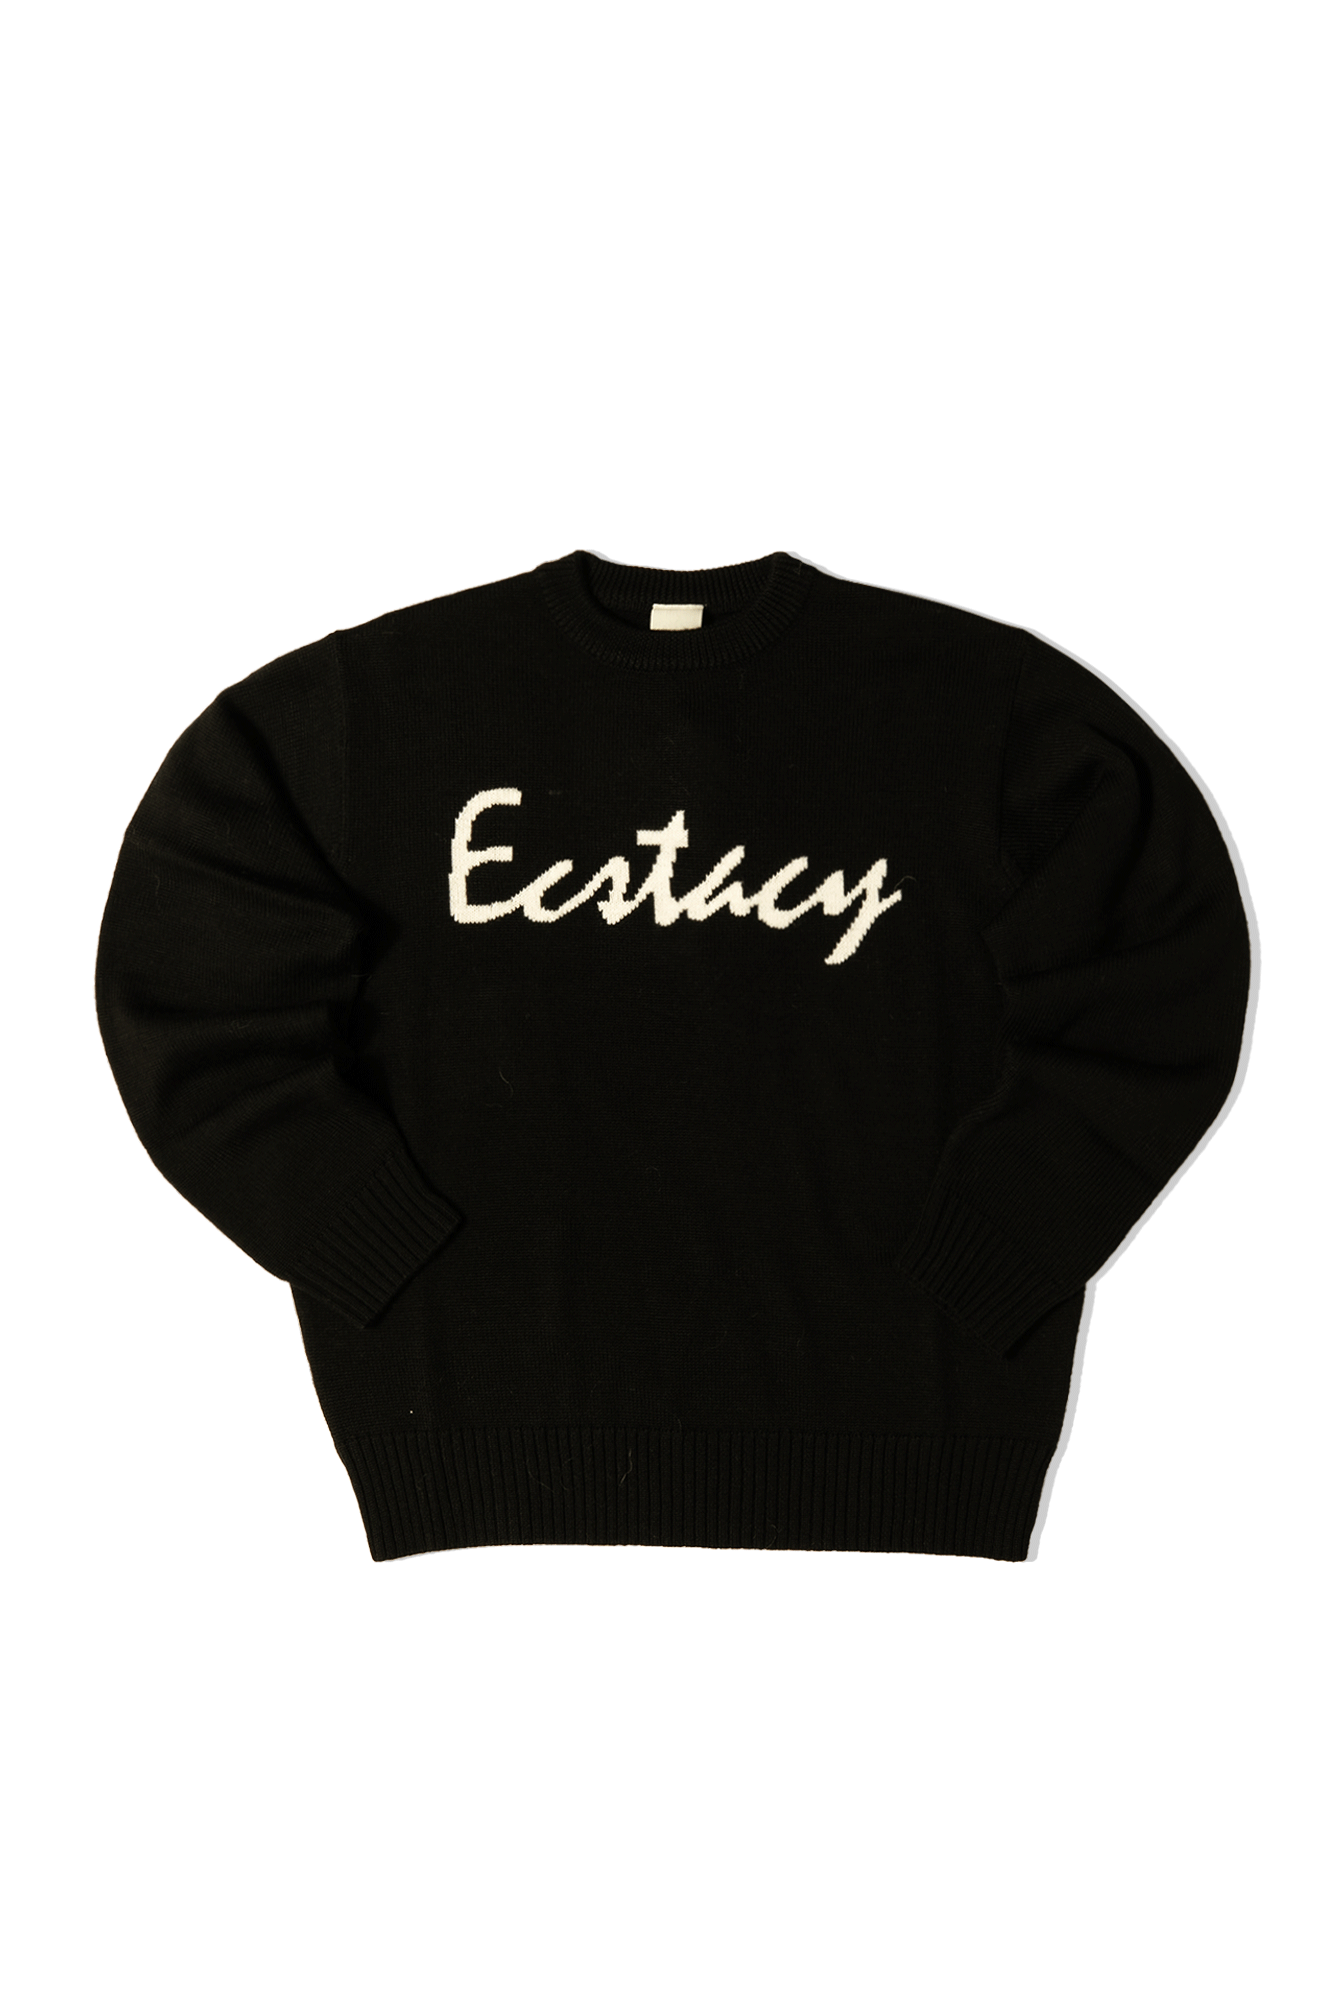 Ecstacy Crewneck Knit